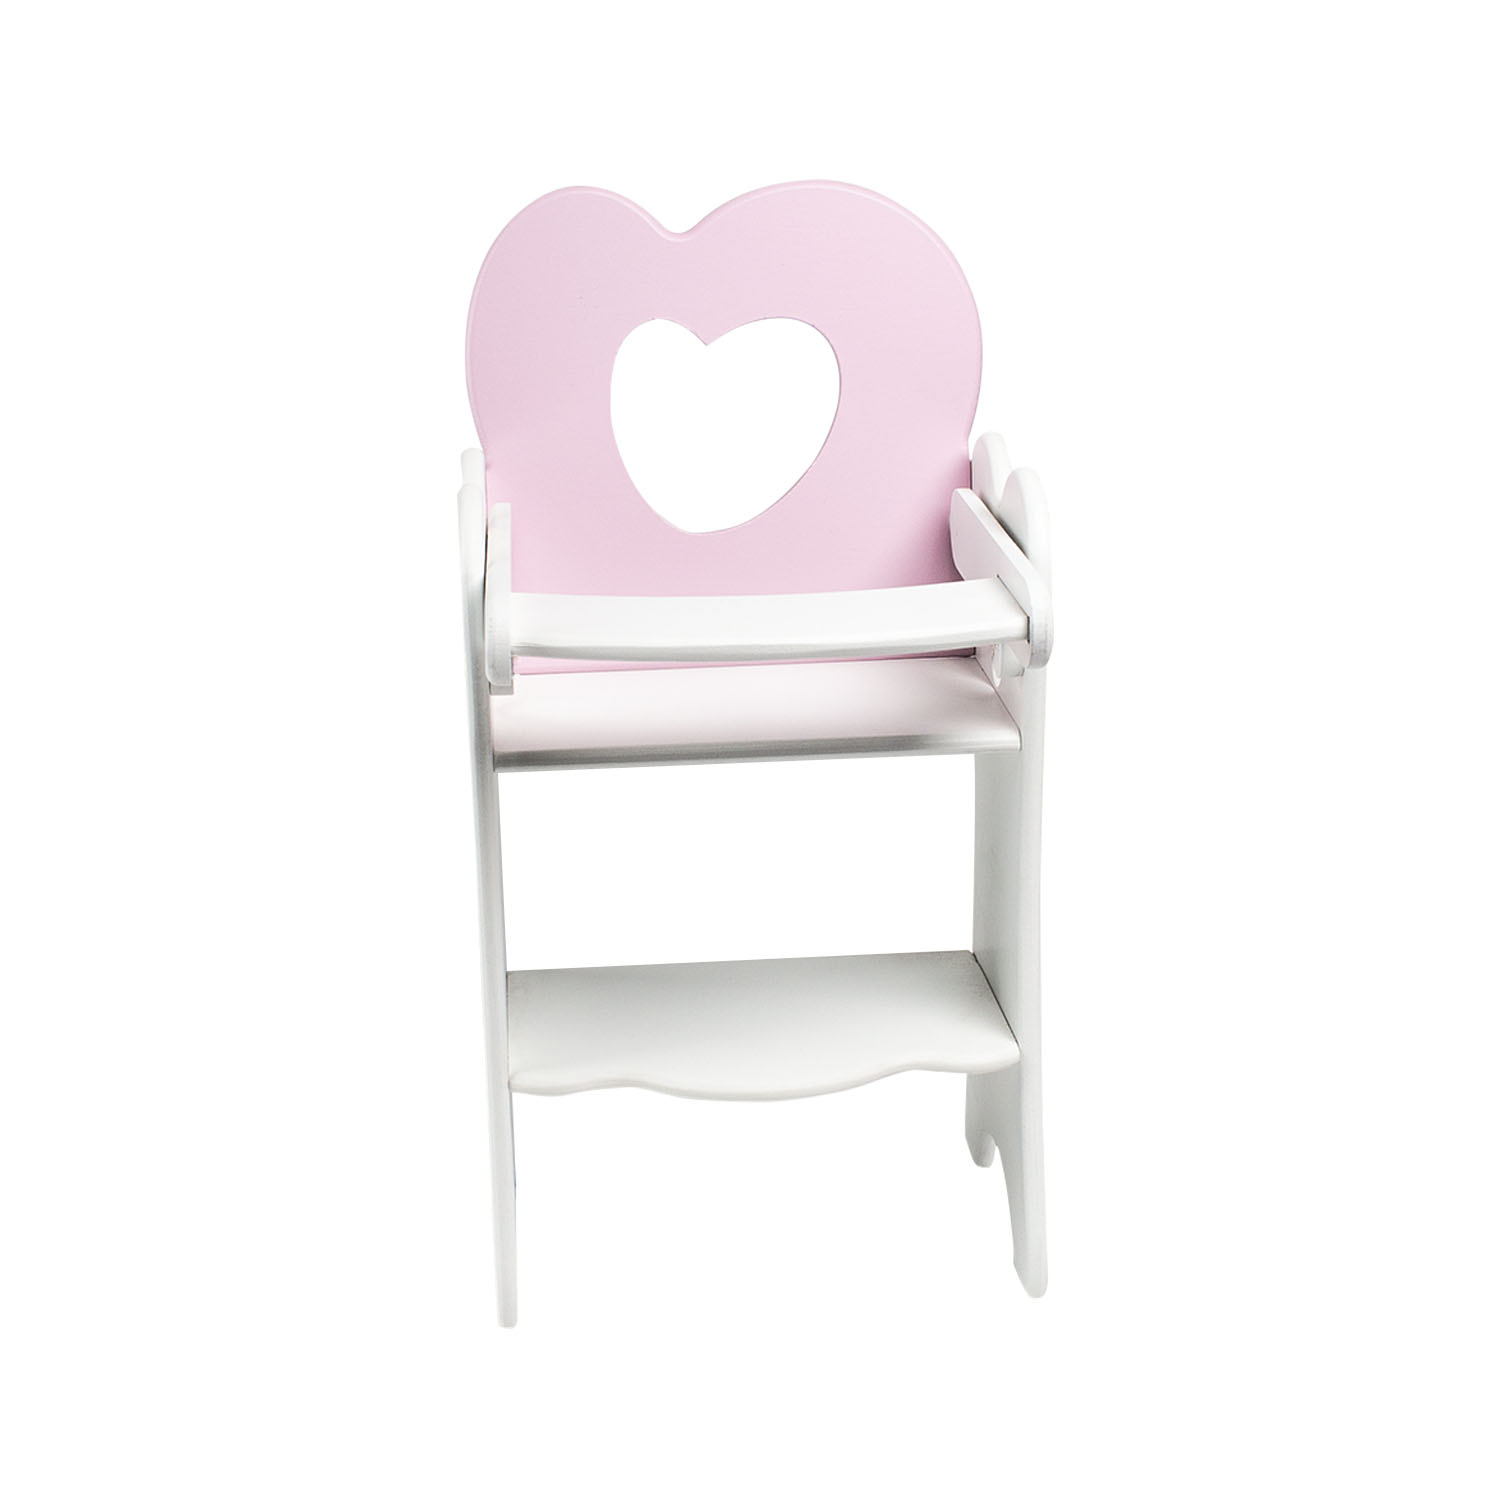 Кукольный стульчик для кормления, нежно-розовый  